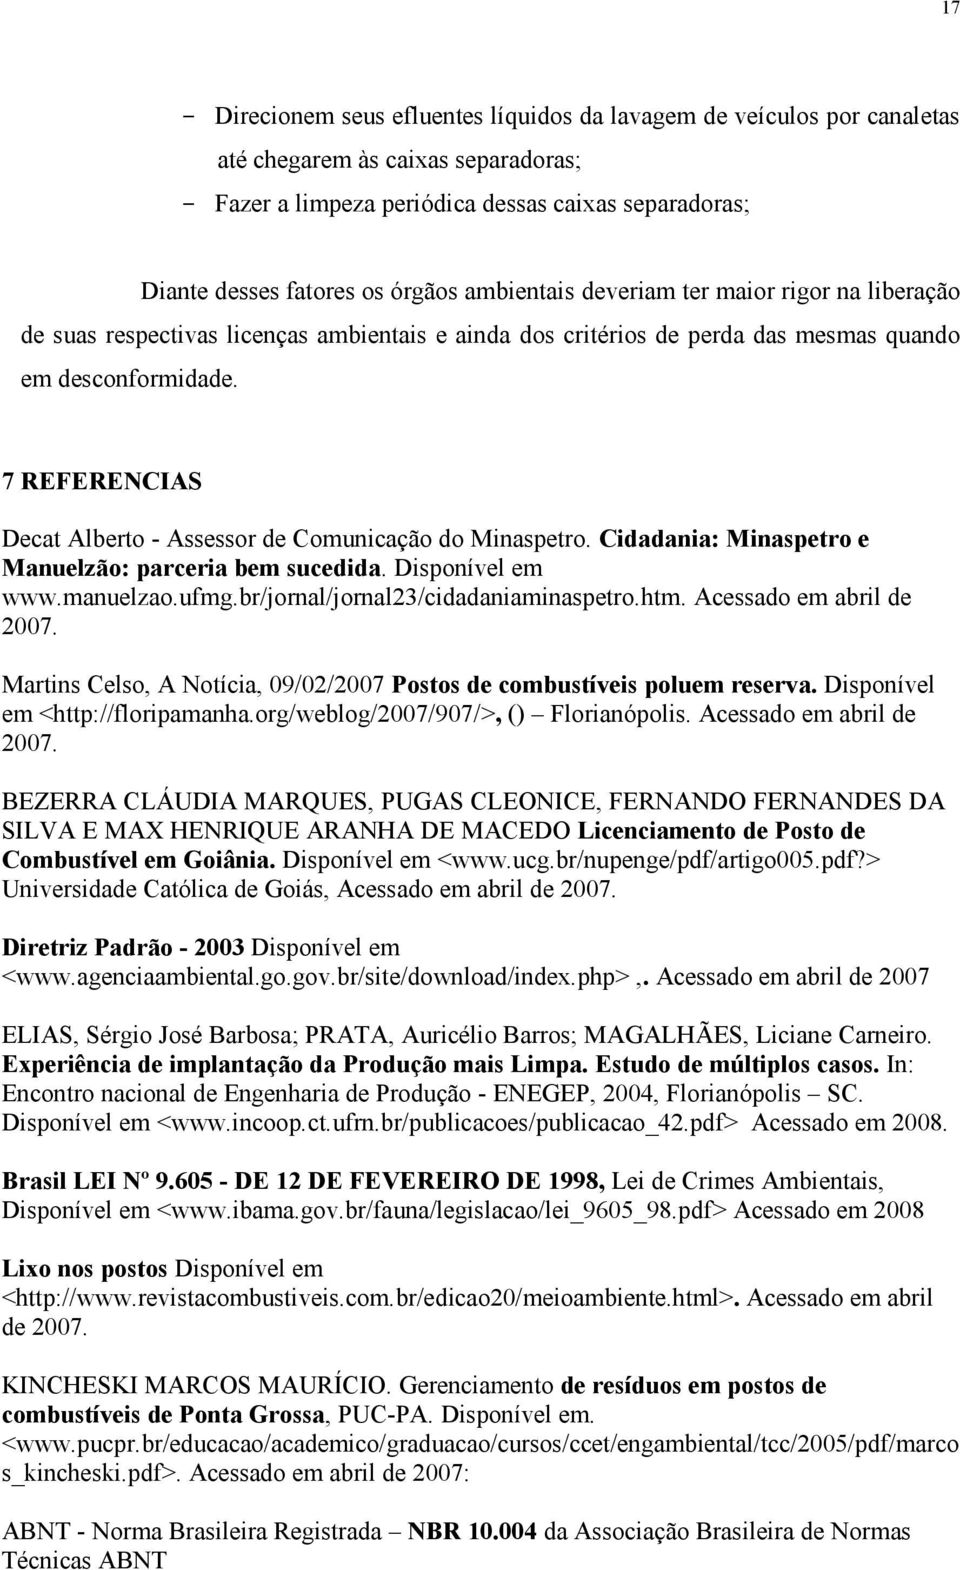 7 REFERENCIAS Decat Alberto - Assessor de Comunicação do Minaspetro. Cidadania: Minaspetro e Manuelzão: parceria bem sucedida. Disponível em www.manuelzao.ufmg.br/jornal/jornal2/cidadaniaminaspetro.